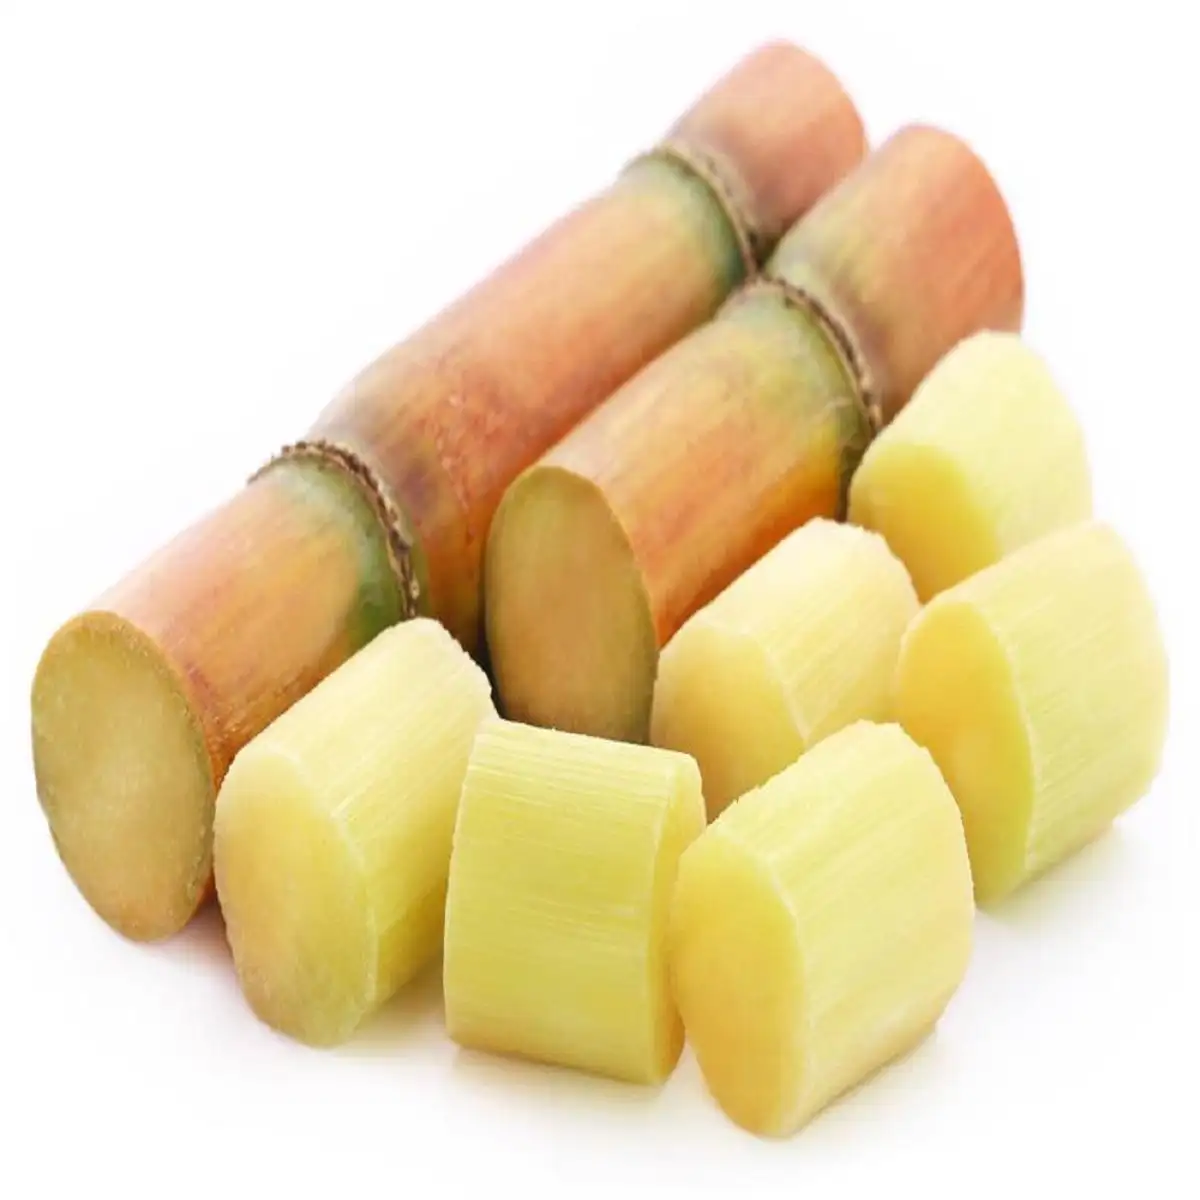 Gula tebu Singapura kualitas Premium Icumsa 45 gula dalam 25kg siap dikirim